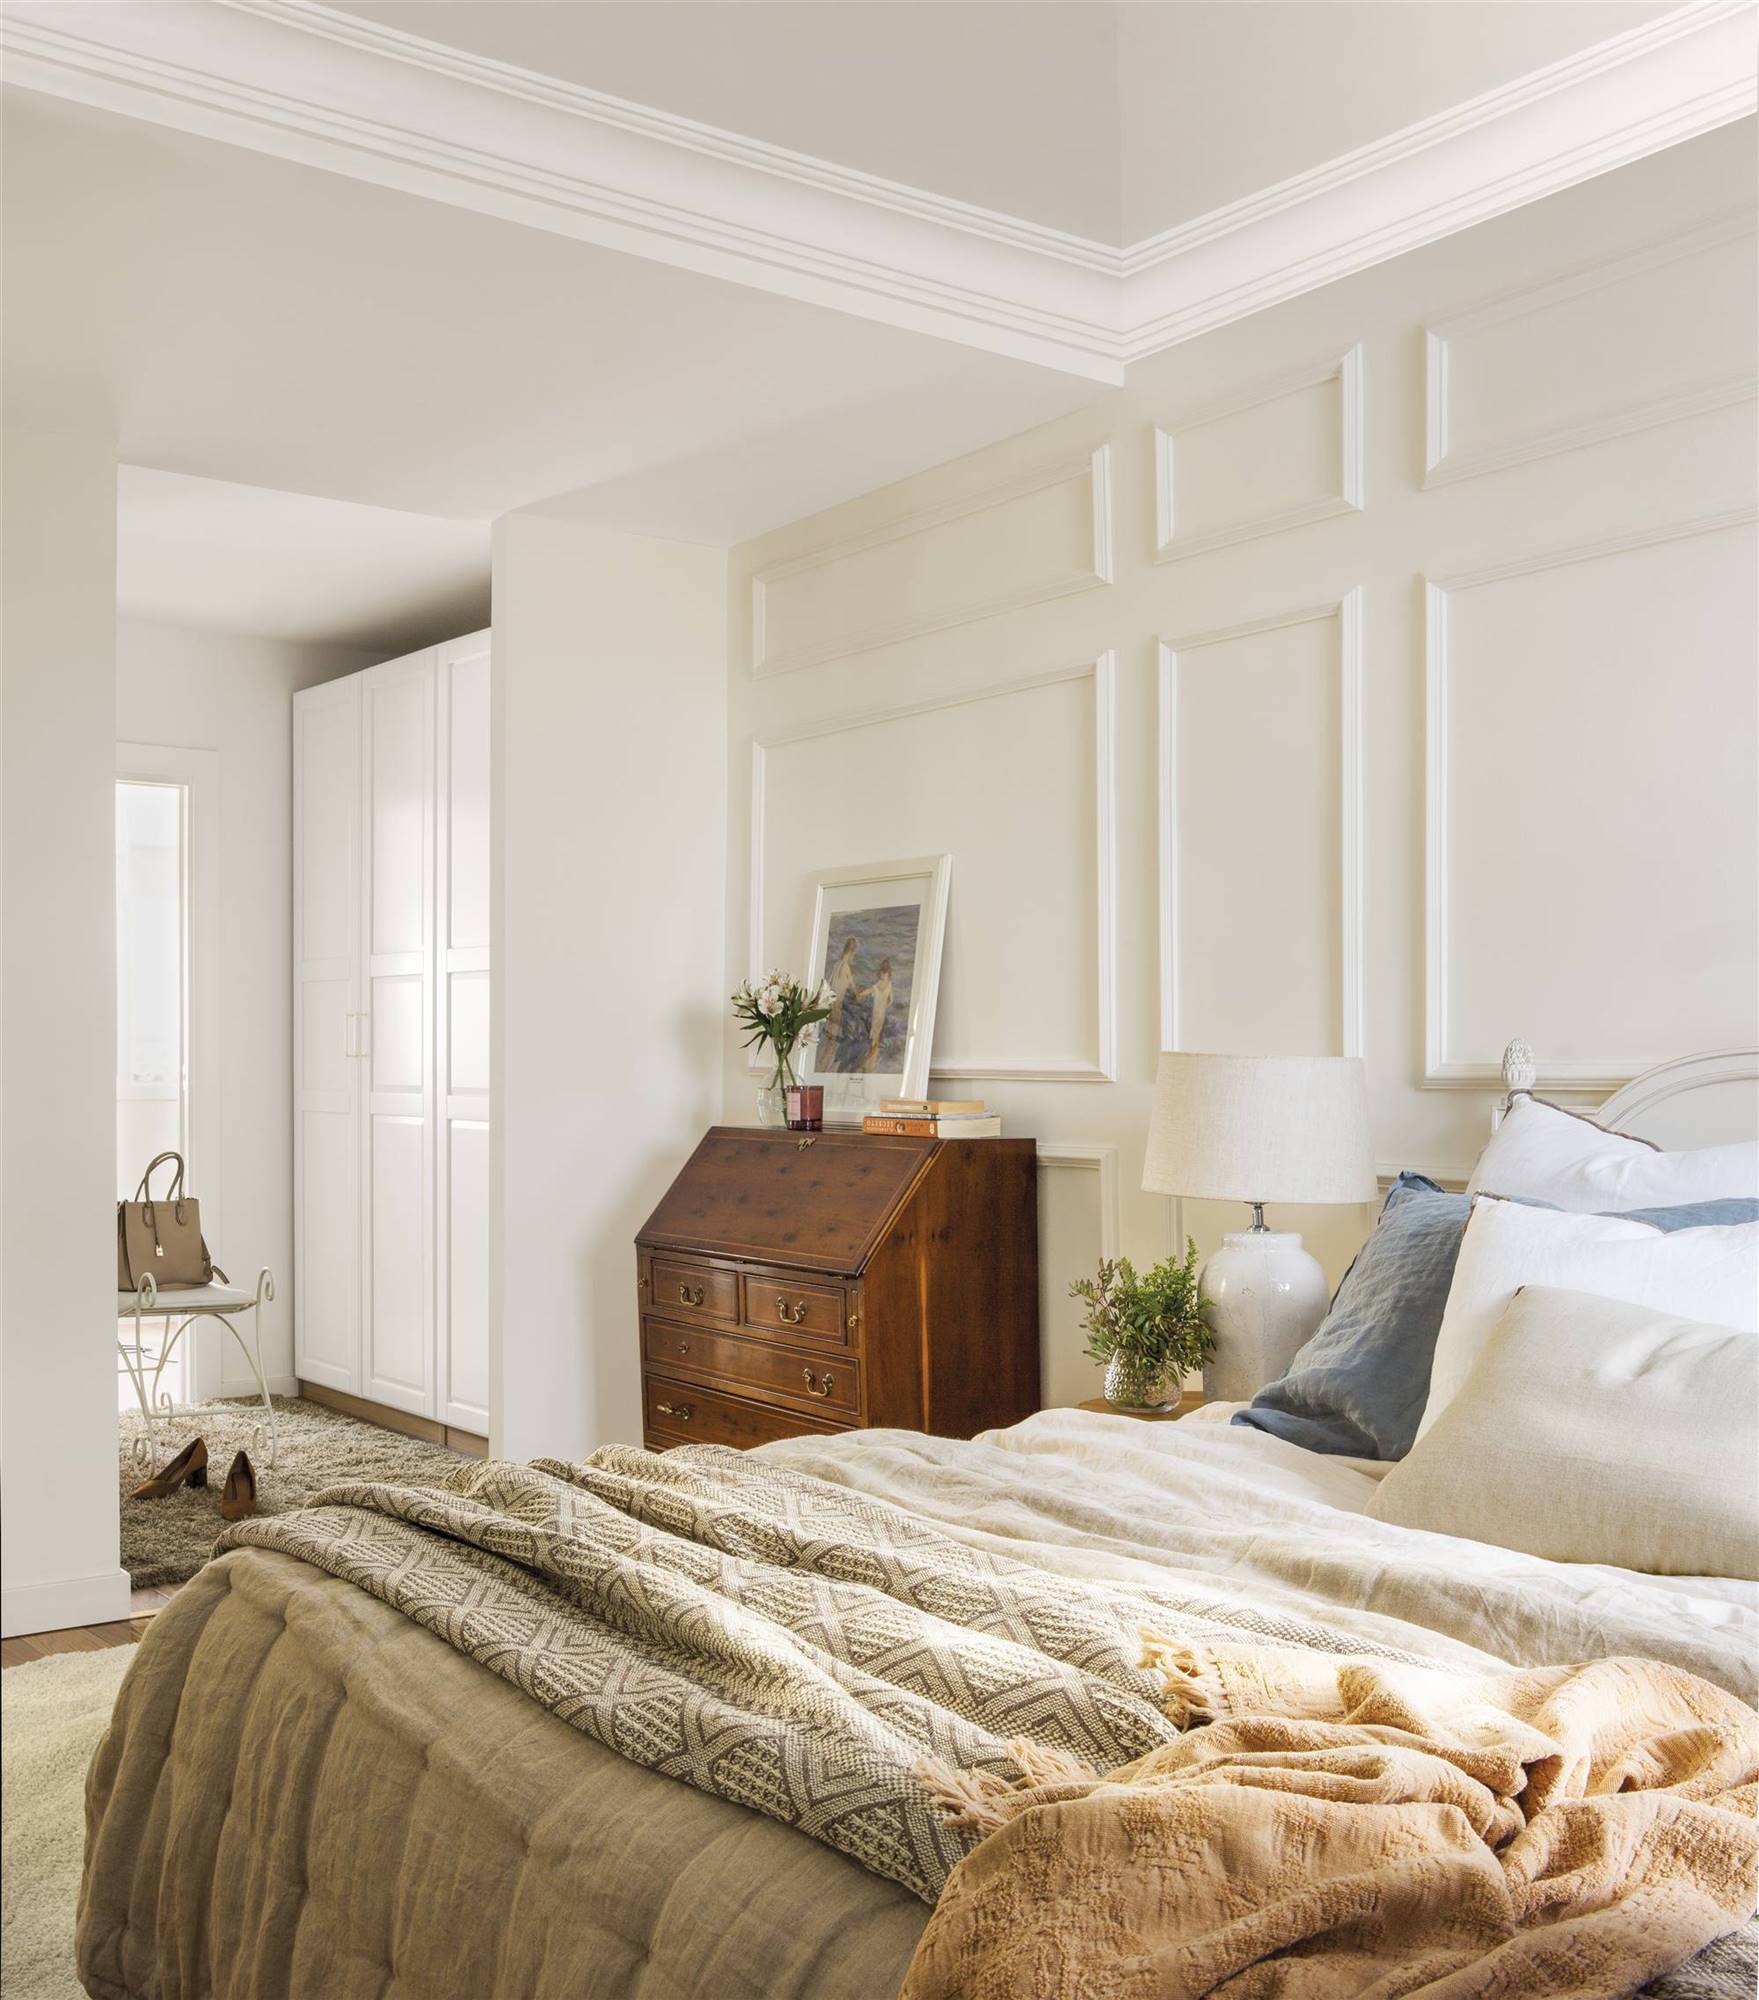 Dormitorio clásico con molduras en la pared y escritorio recuperado. 